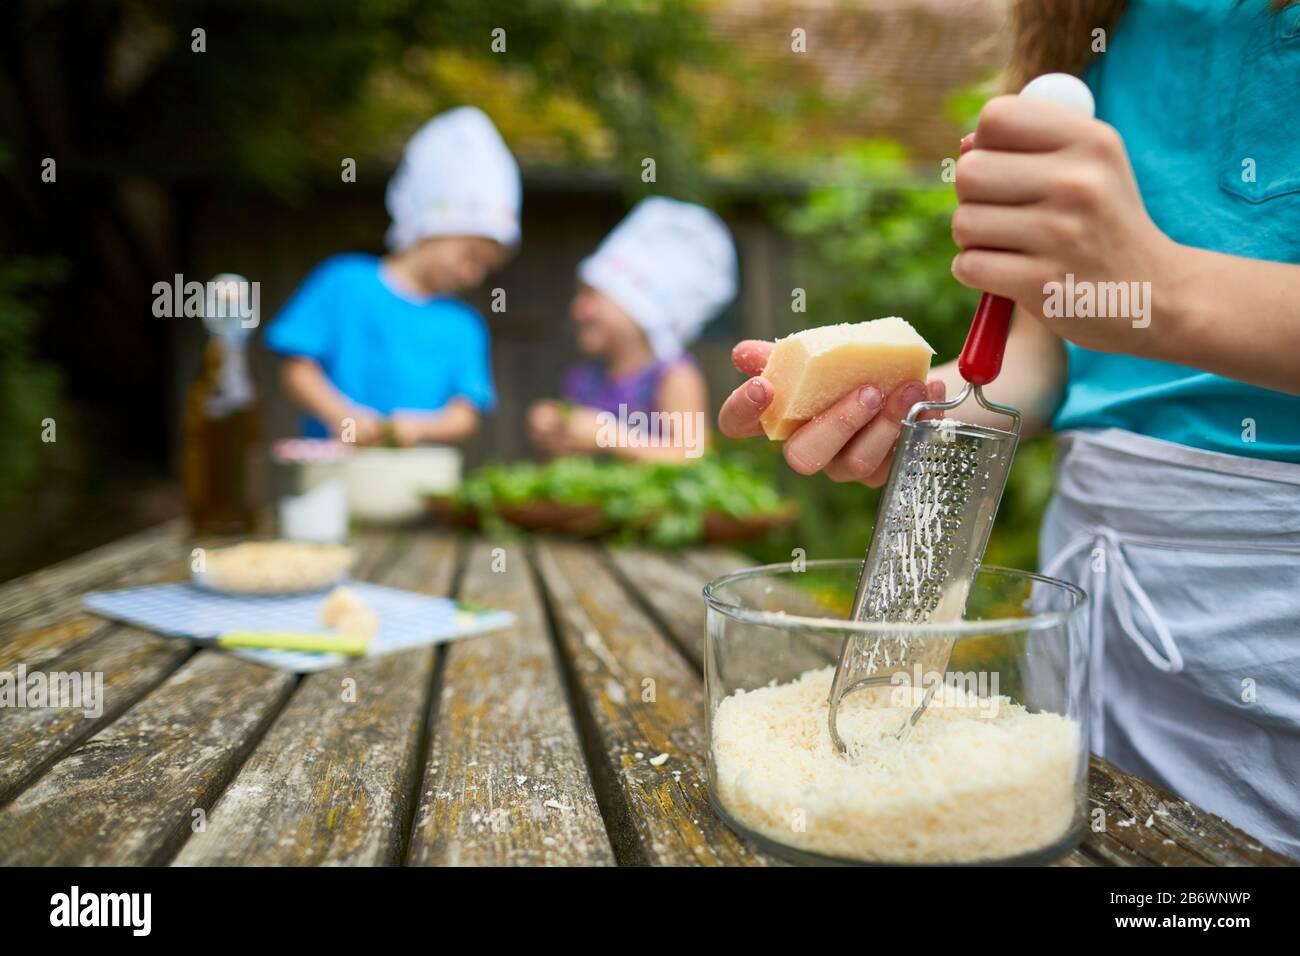 Bambini che indagano cibo. Serie: Produzione di pesto, quindi formaggio grattugiato. Imparare secondo il principio della Pedagogia di Reggio, comprensione e scoperta giocose. Germania. Foto Stock